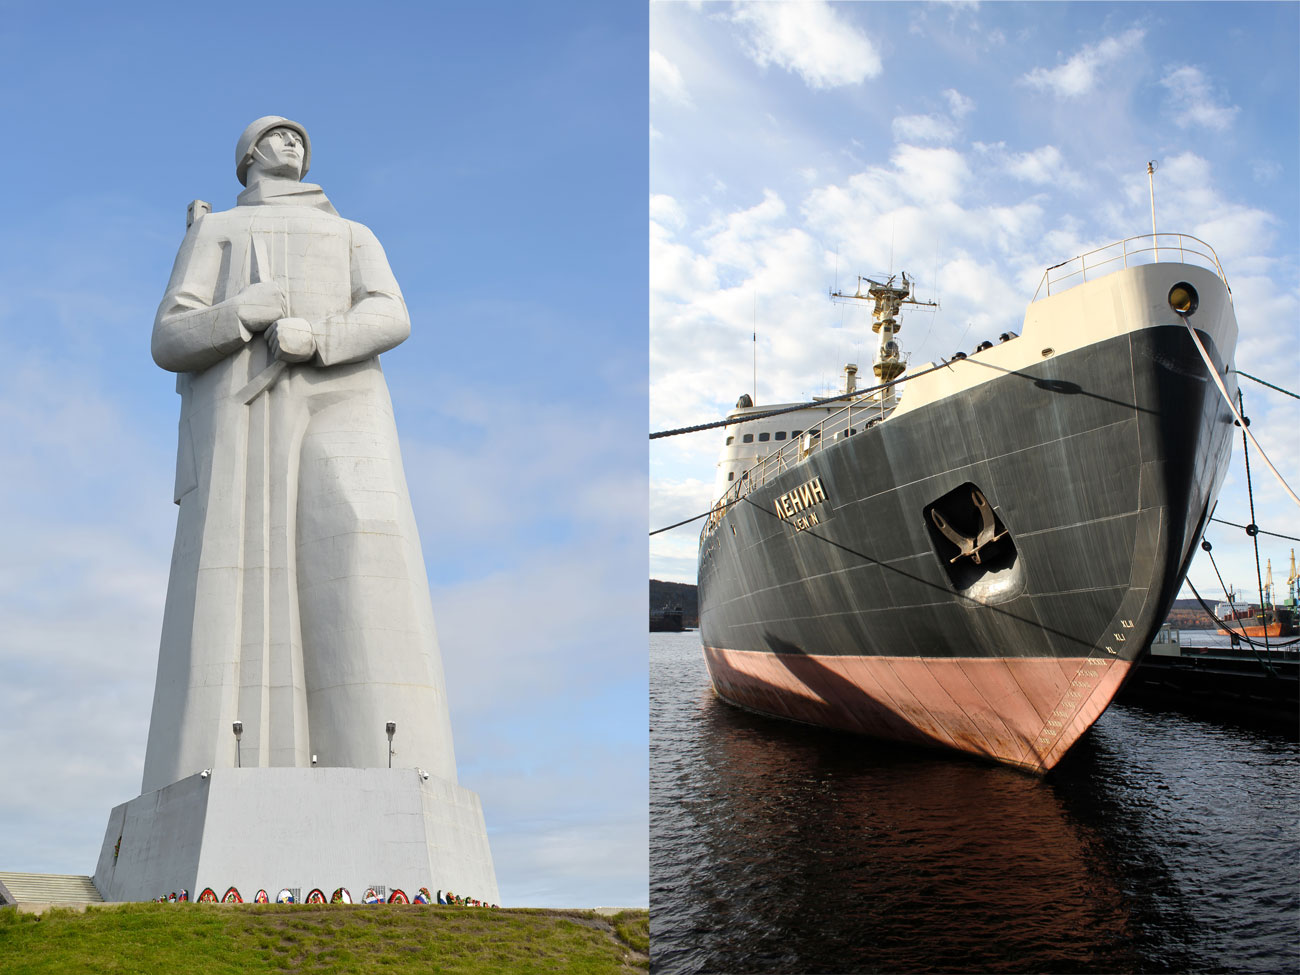 Murmansk: Eine Hafenstadt im Norden Russlands und die weltgrößte hinterm Polarkreis. Kein Wunder, dass ein riesiger Eisbrecher zu ihren Wahrzeichen zählt. Sowie die Aljoscha-Statue zu Ehren der Sowjetsoldaten, -matrosen und -piloten, die im Zweiten Weltkrieg kämpften.